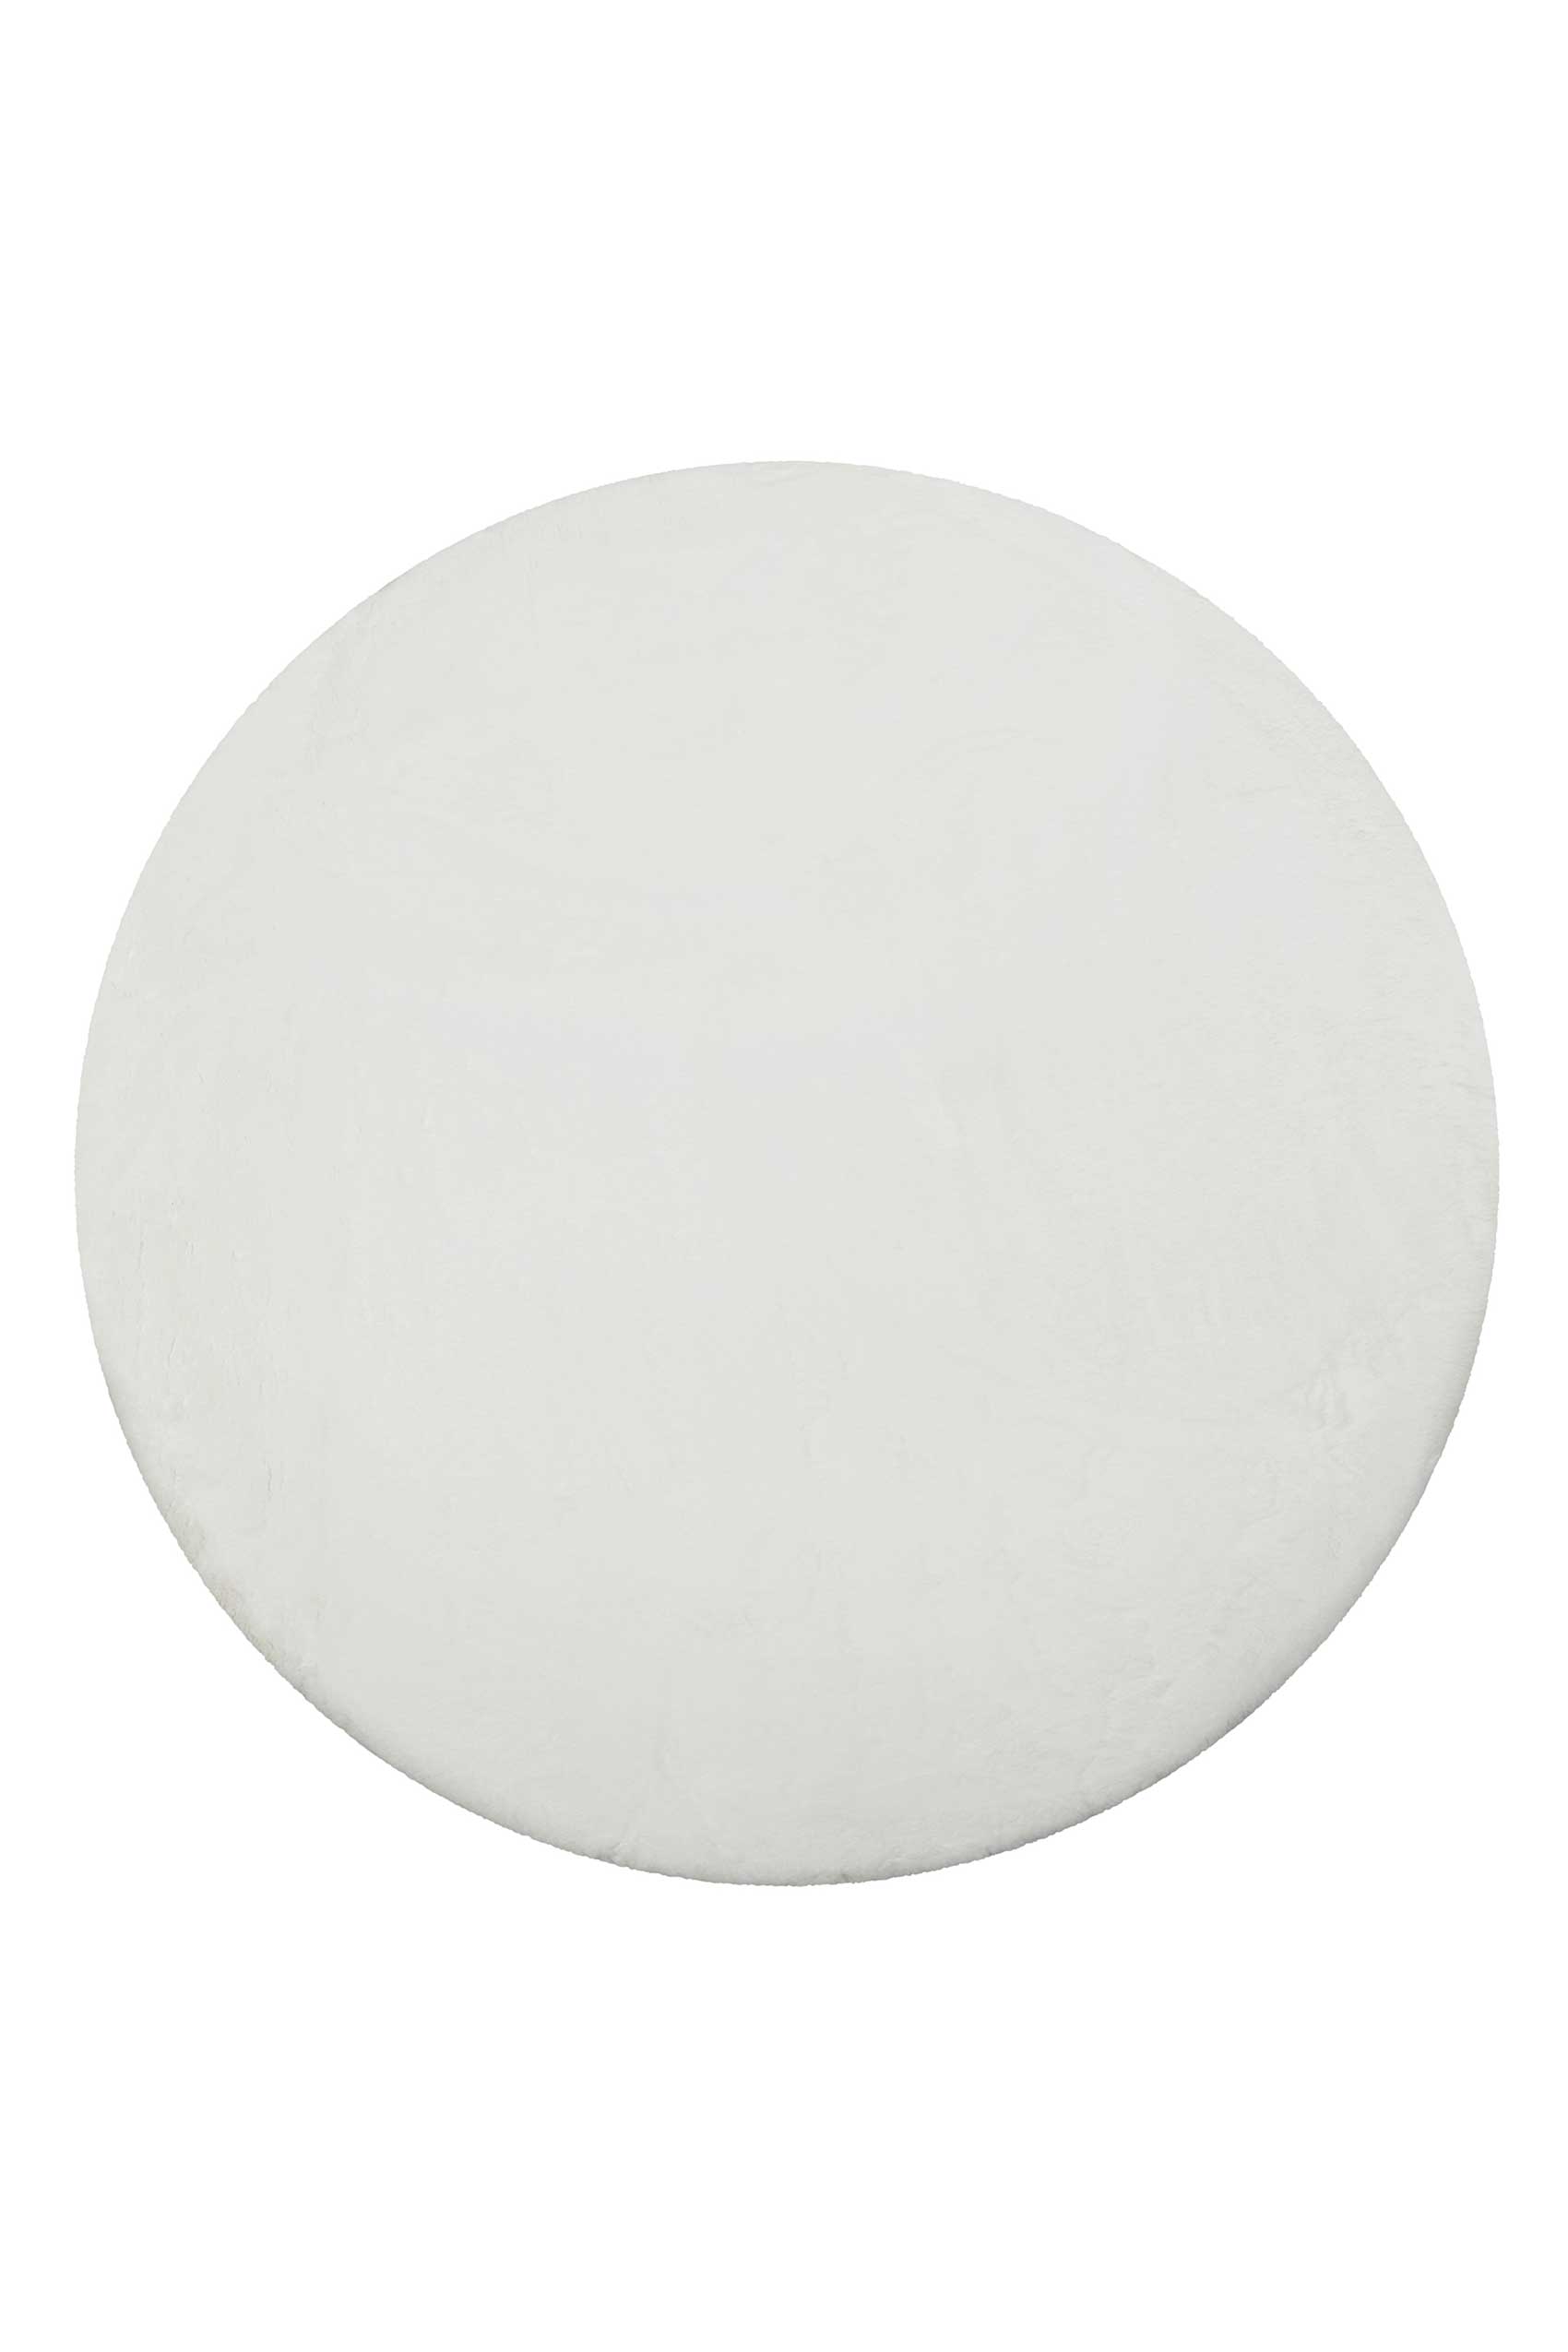 Teppich Rund Weiß flauschig und weich » Anna « WECONhome Basics - Ansicht 1